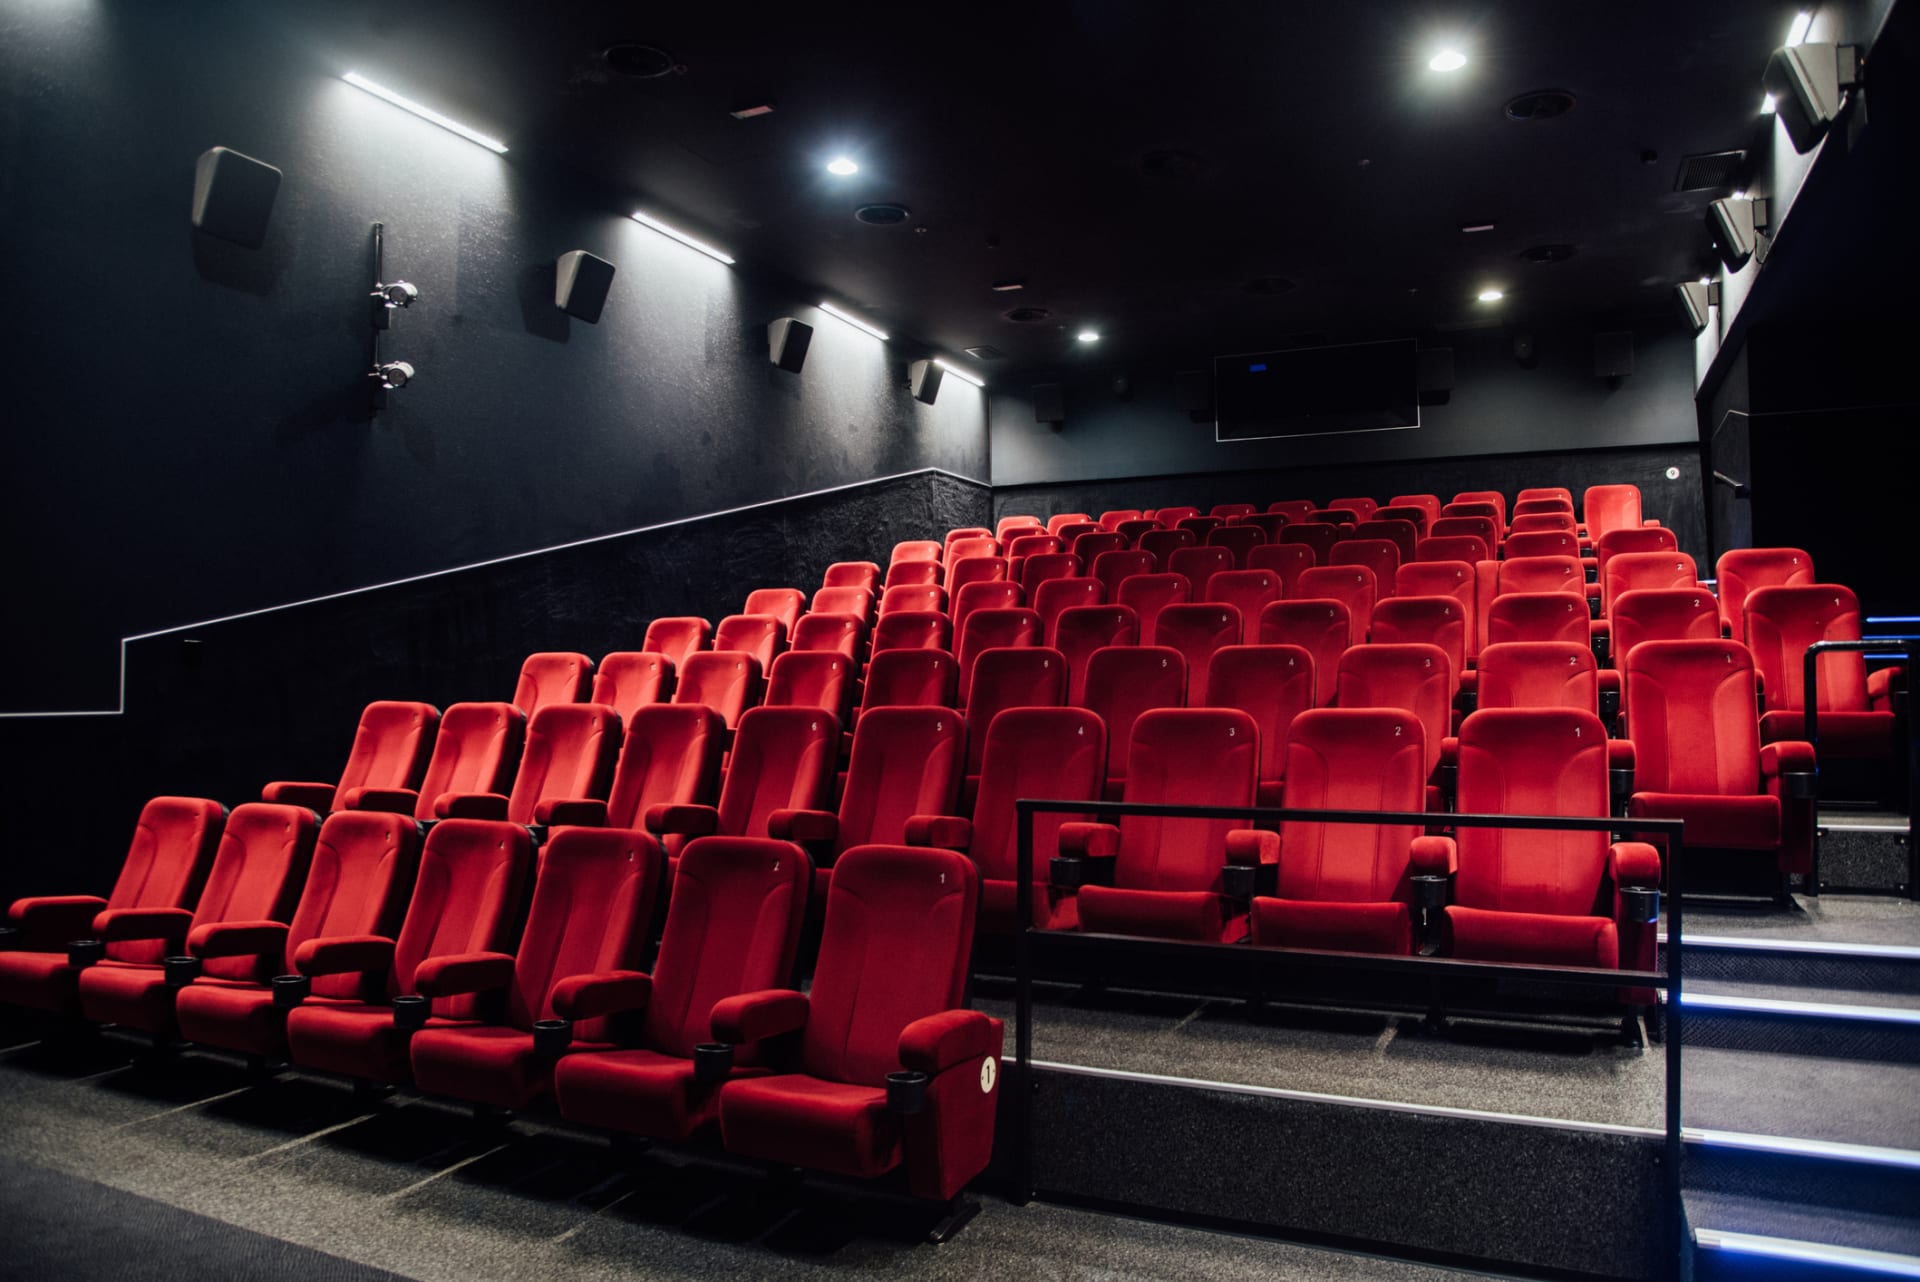 Pokud by společnost Cineworld Group vyhlásila bankrot, mohli by lidé v Česku nadále navštěvovat kina řetězce Cinestar či menší zařízení. (Ilustrační snímek)